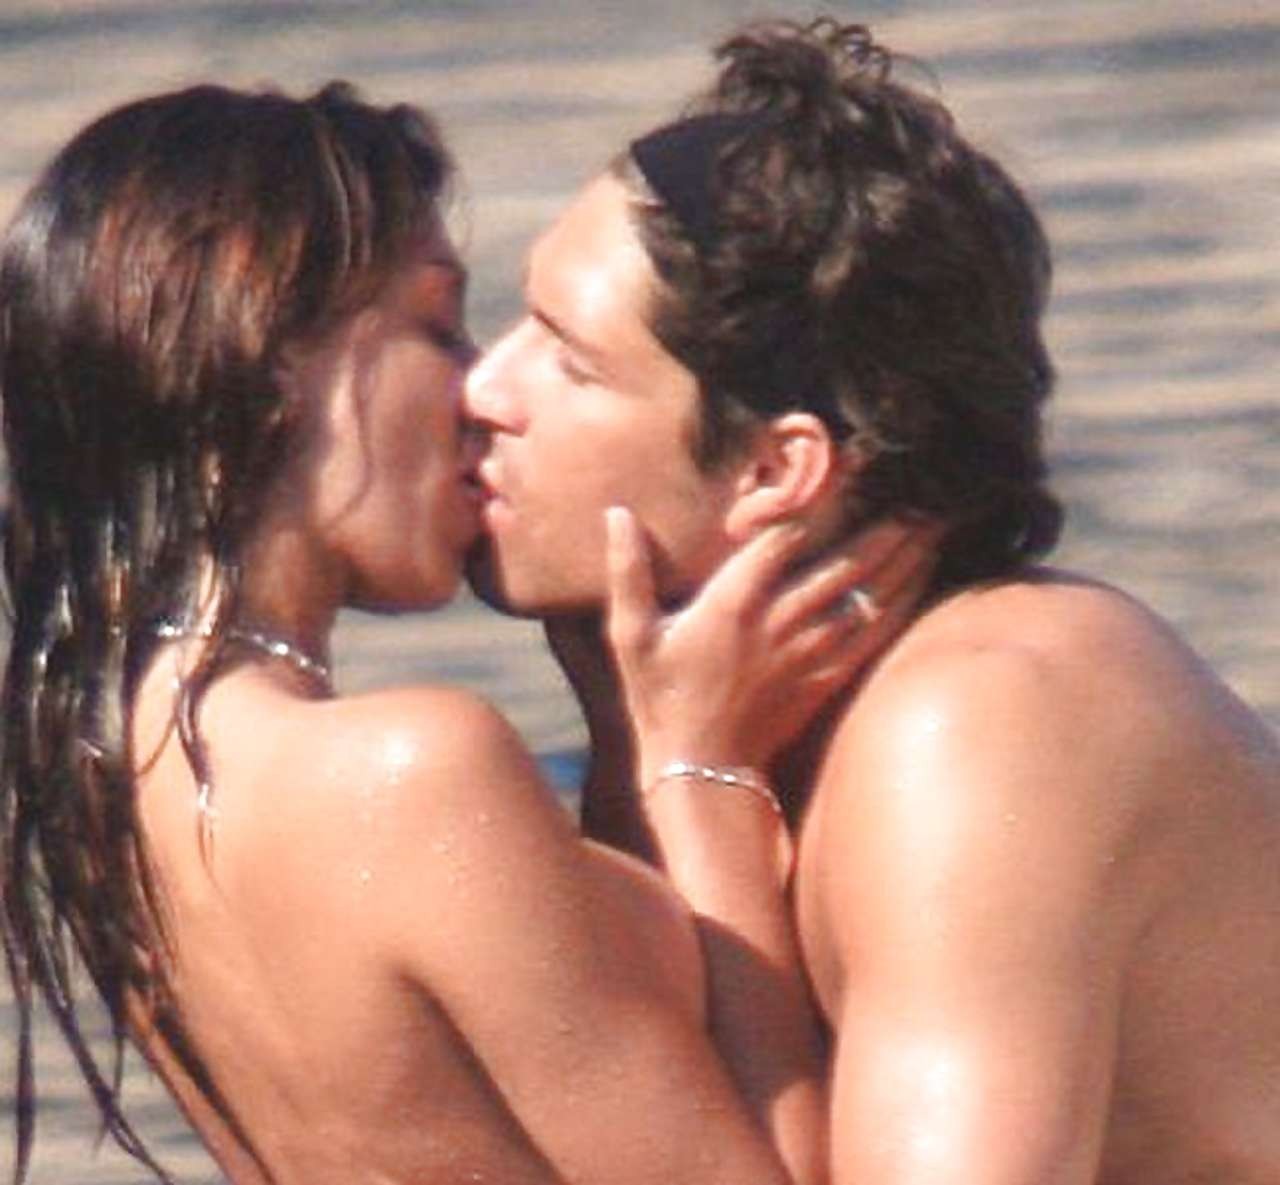 Belen rodriguez expose ses beaux gros seins pendant qu'elle embrasse son petit ami sur la plage.
 #75300770